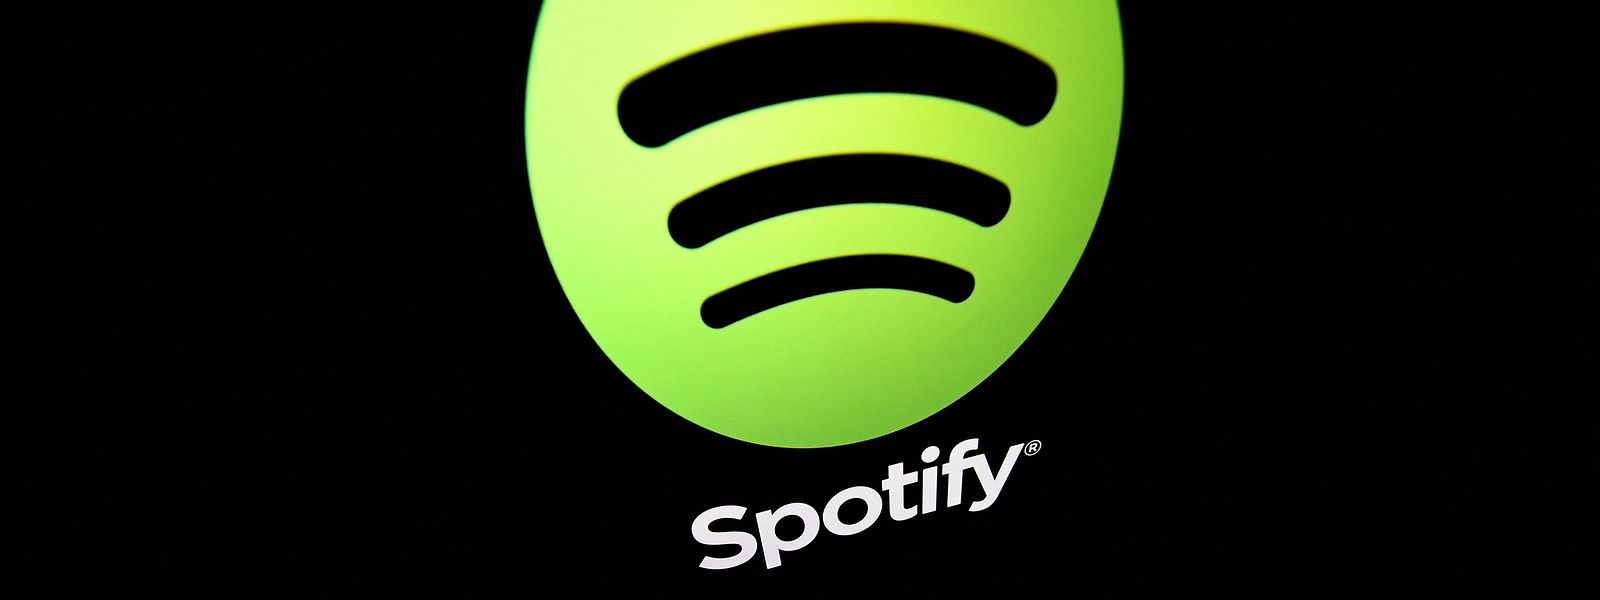 Spotify hat nun erstmals in seiner Firmengeschichte die Marke von 200 Millionen Abonnenten geknackt.